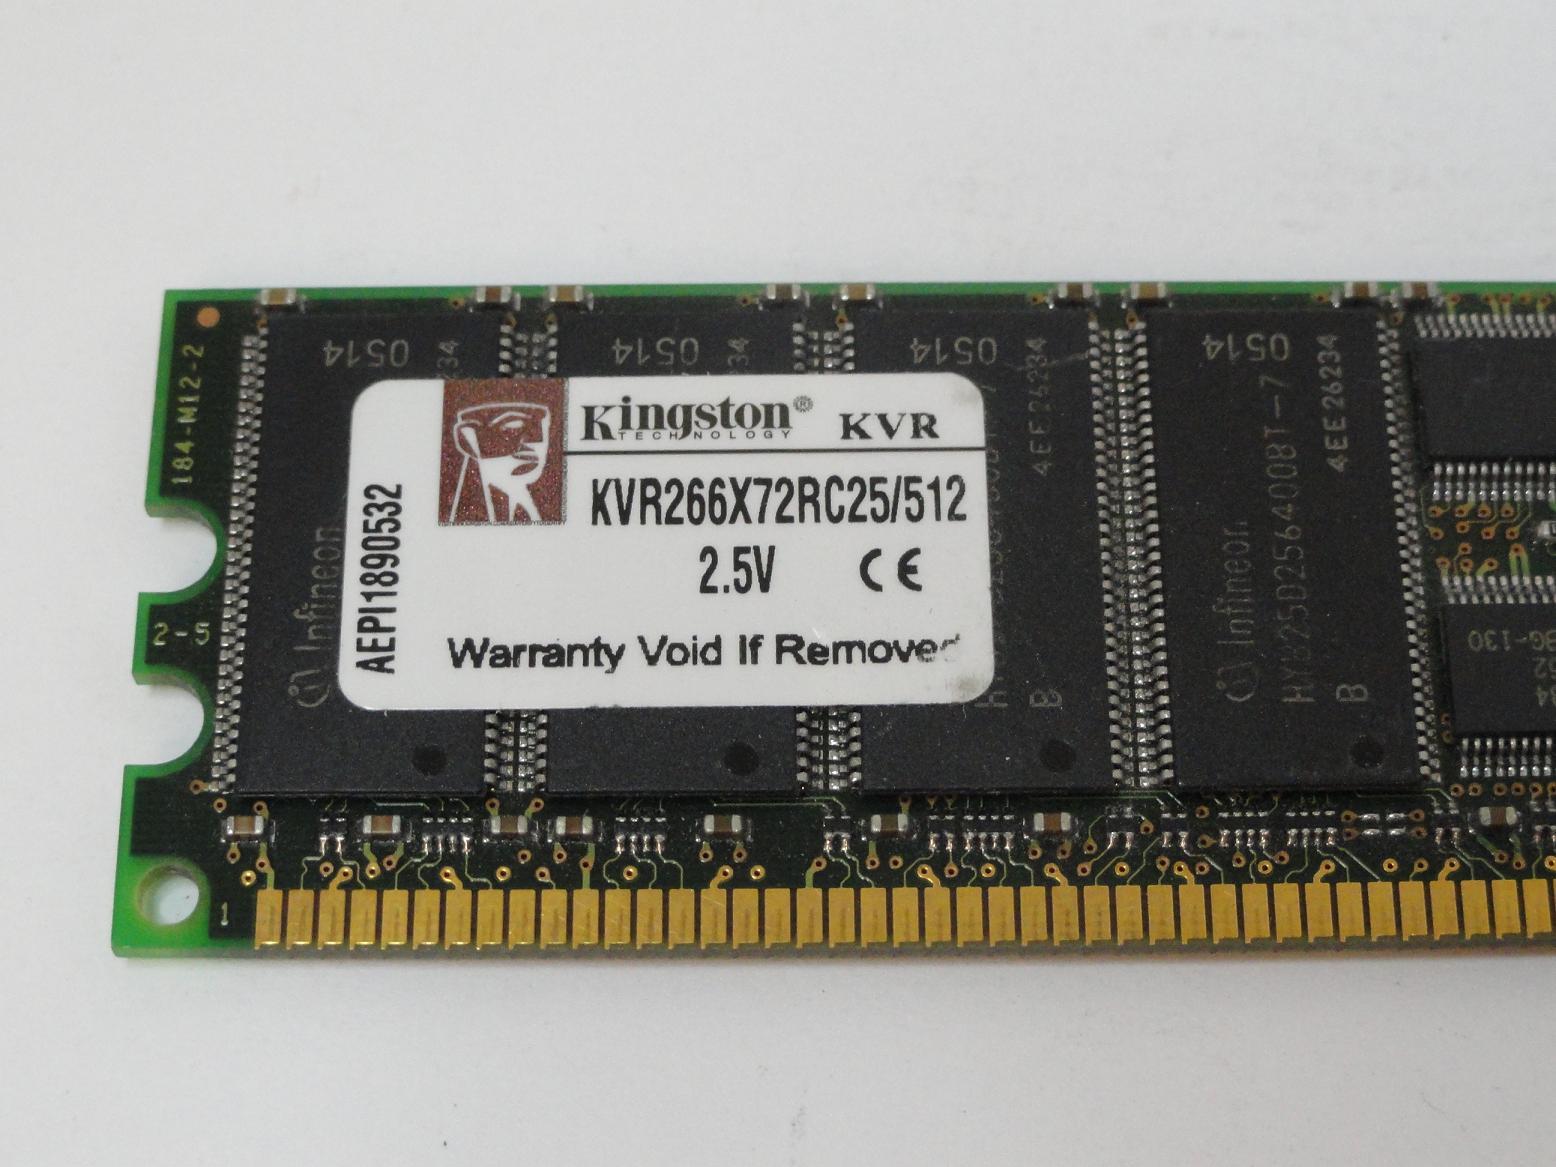 PR25358_9930280-002.A00_Kingston 512MB PC2100 DDR-266MHz DIMM RAM - Image4